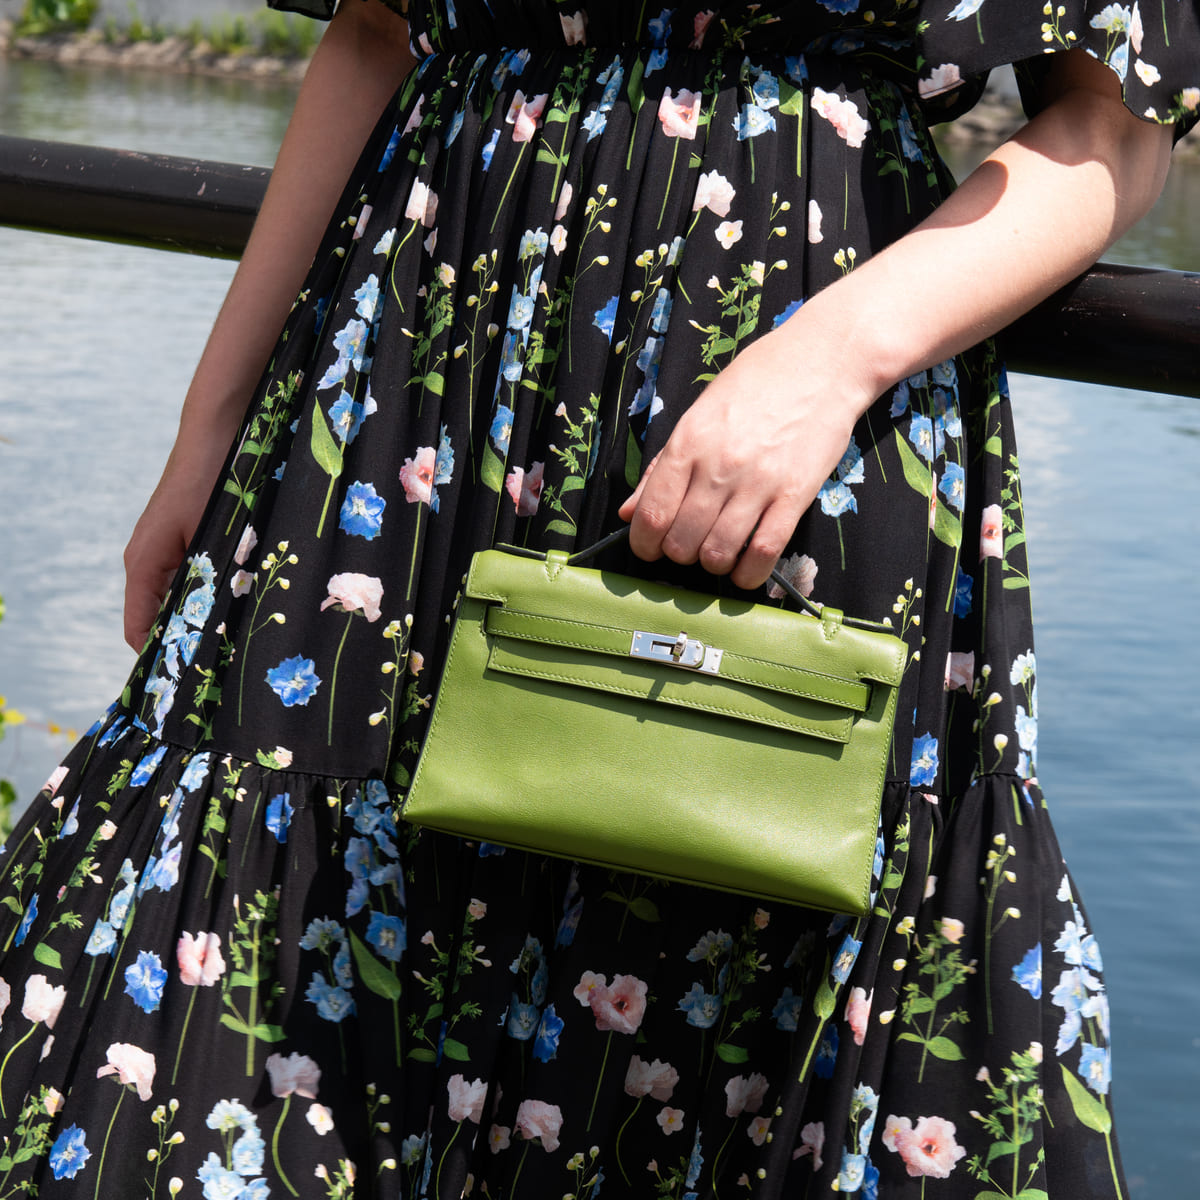 Hermes Vert Pelouse Swift Kelly Pochette - Love that Bag etc - Preowned Authentic Designer Handbags & Preloved Fashions